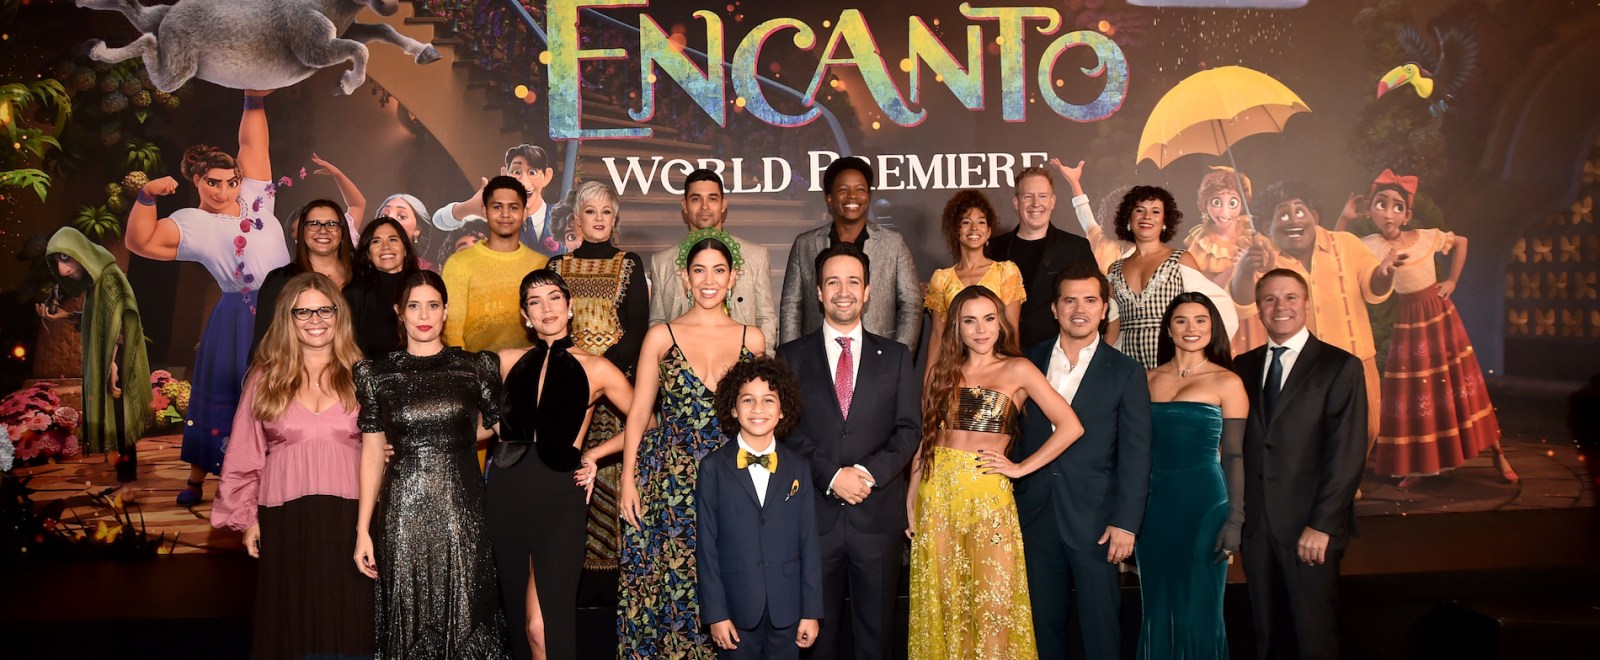 Encanto Cast World Premiere 2021